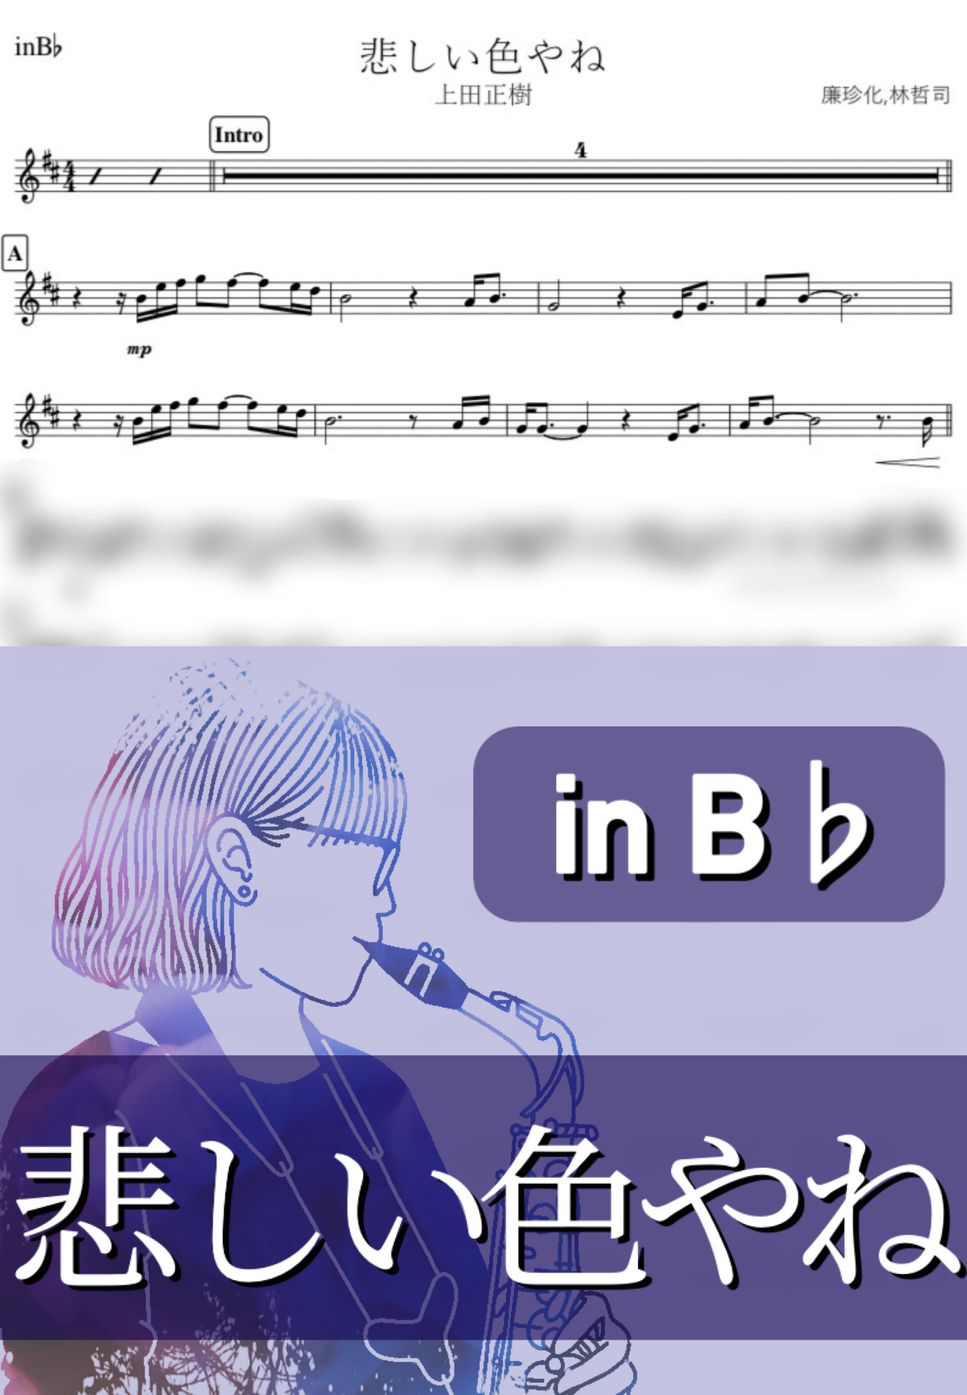 上田正樹 - 悲しい色やね (B♭) by kanamusic